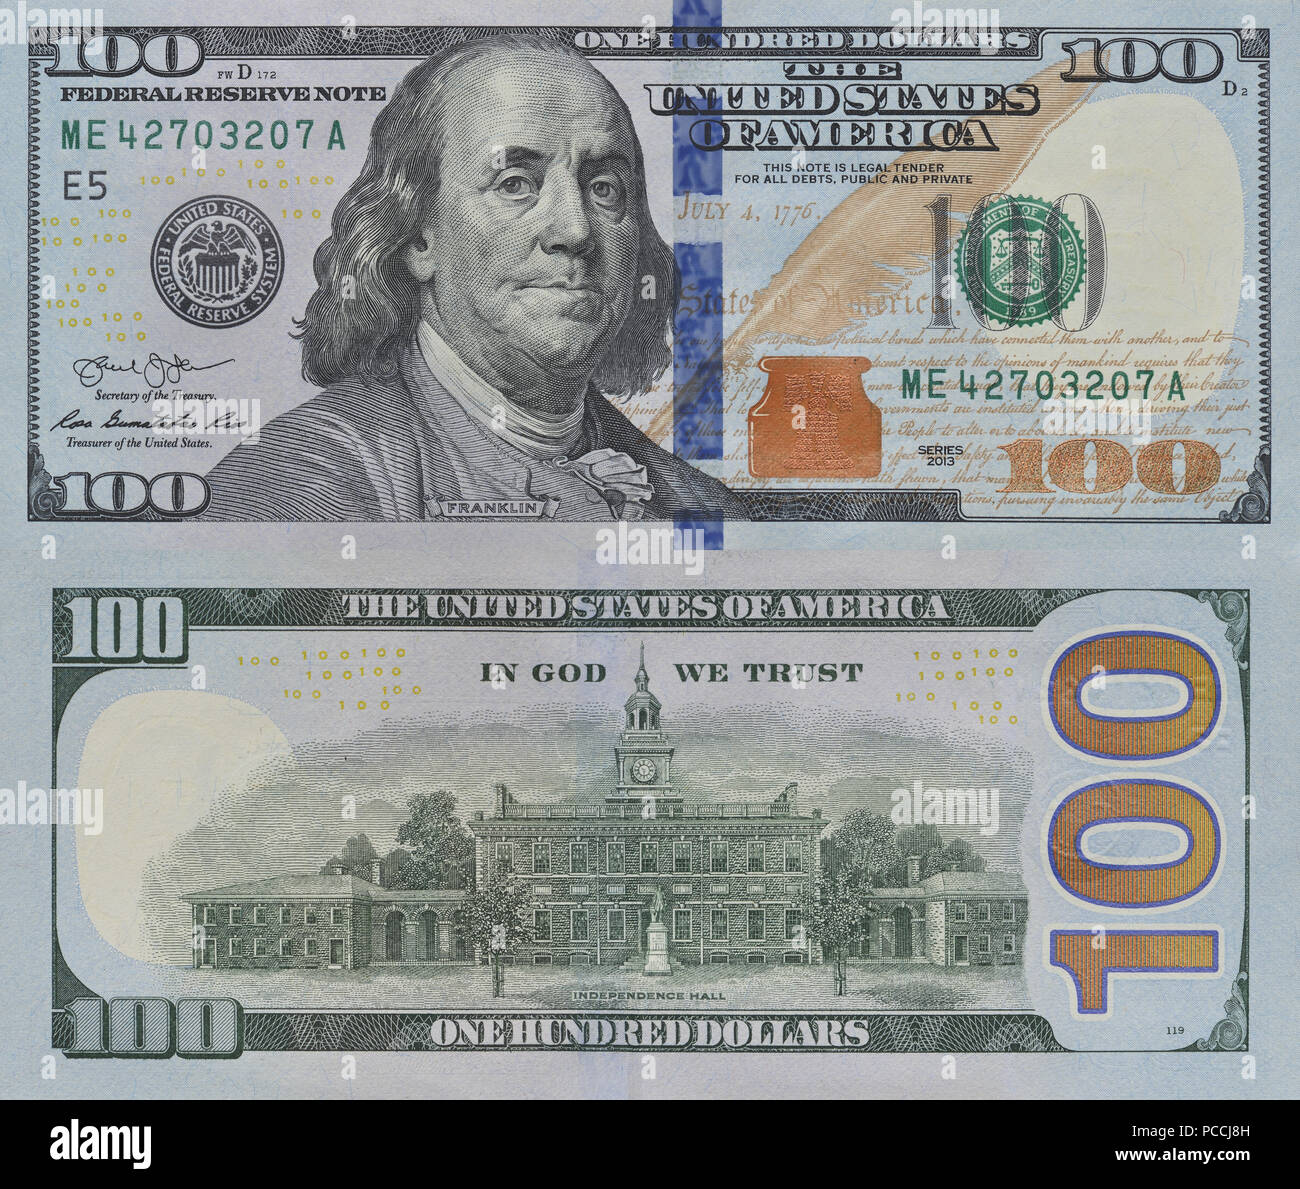 Bild des neuen Hundert Dollar Bill vorn und hinten Für illustrative nur verwenden. Konzept der Wirtschaft und die amerikanische Währung. Stockfoto